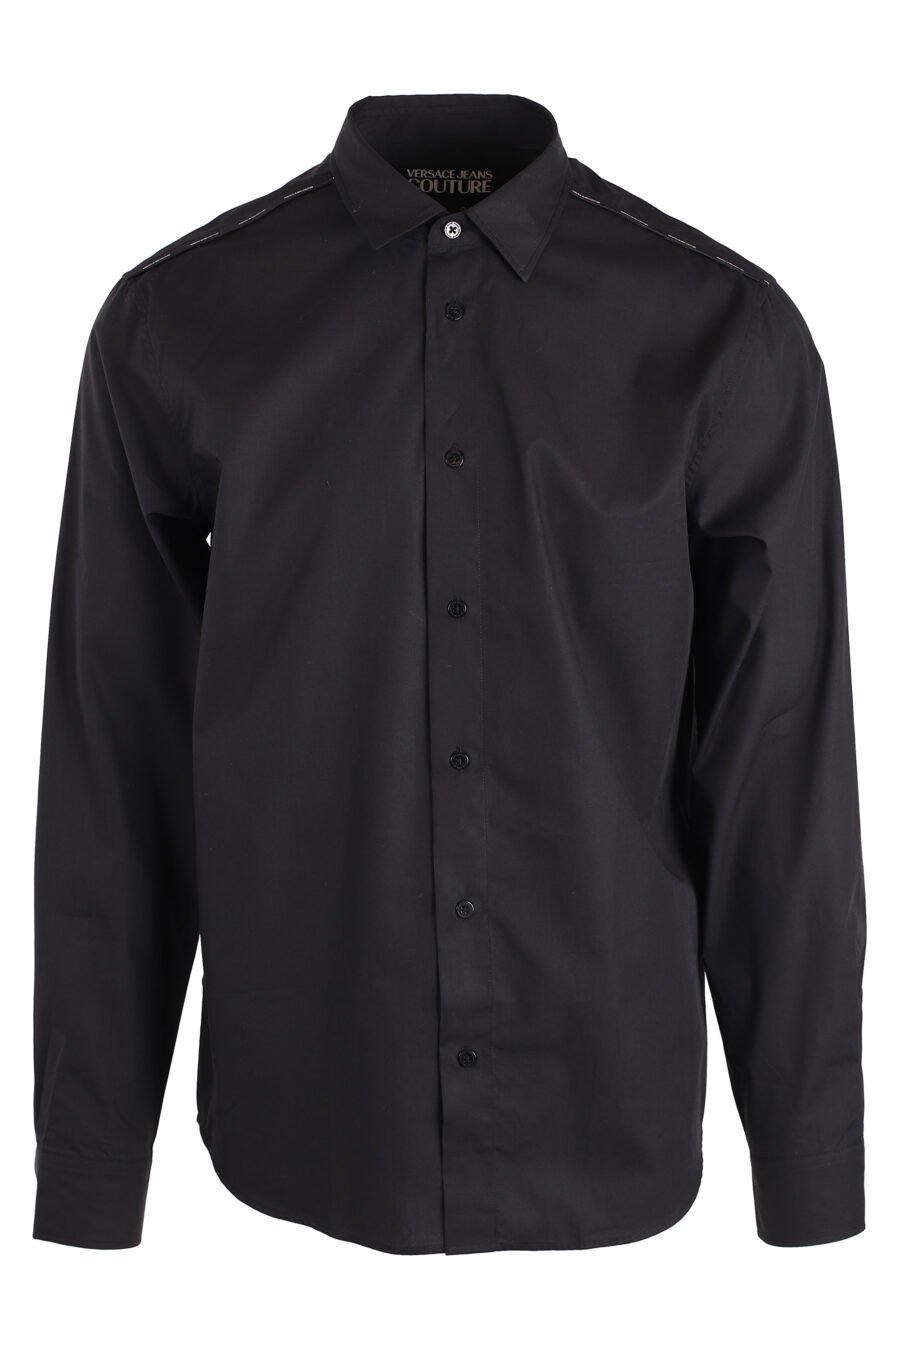 Black button down shirt - IMG 4130